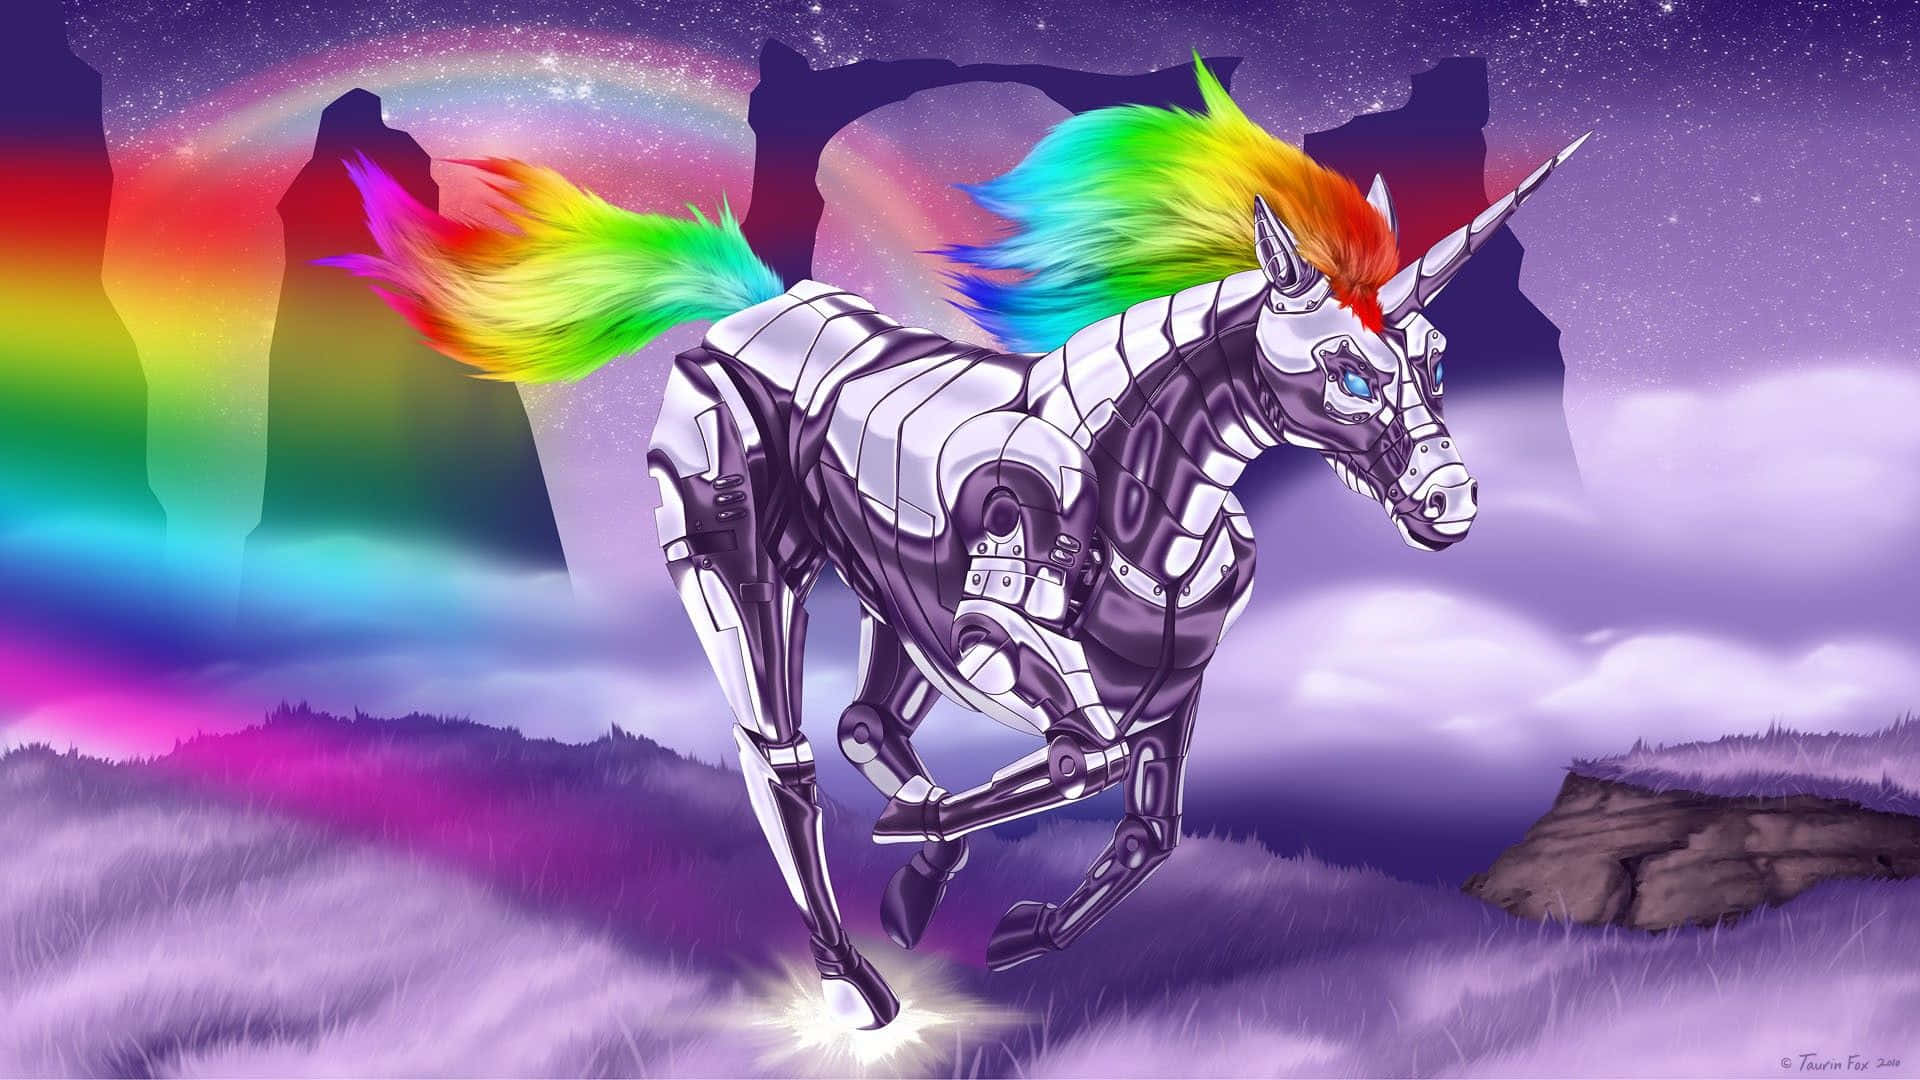 A Unicorn With Rainbow Hair And A Rainbow Sky Wallpaper